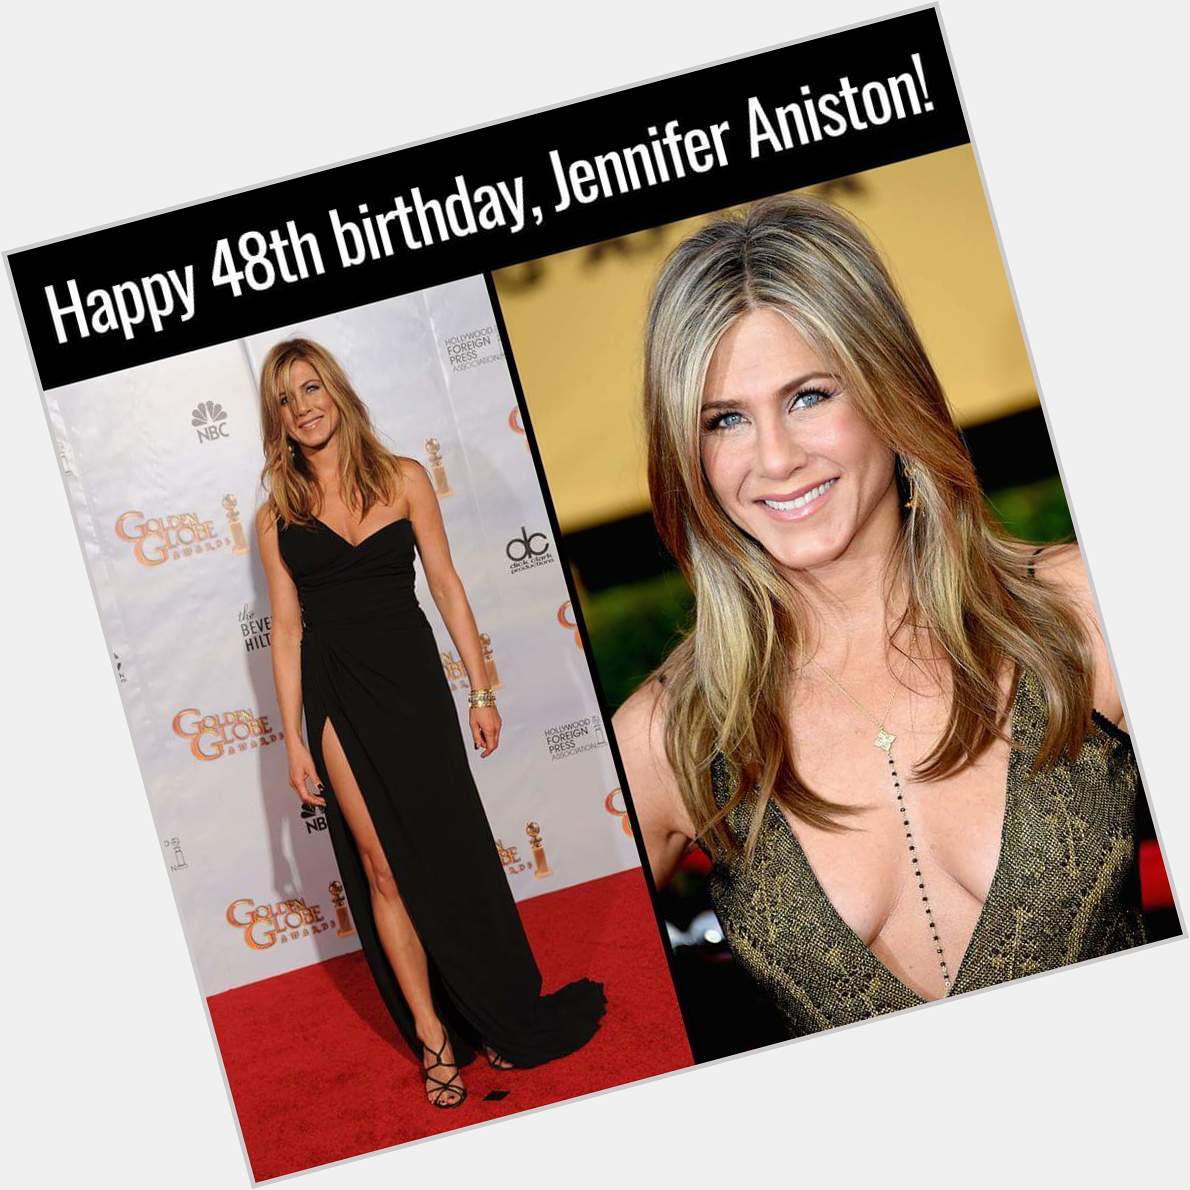 Happy birthday Jennifer Aniston  